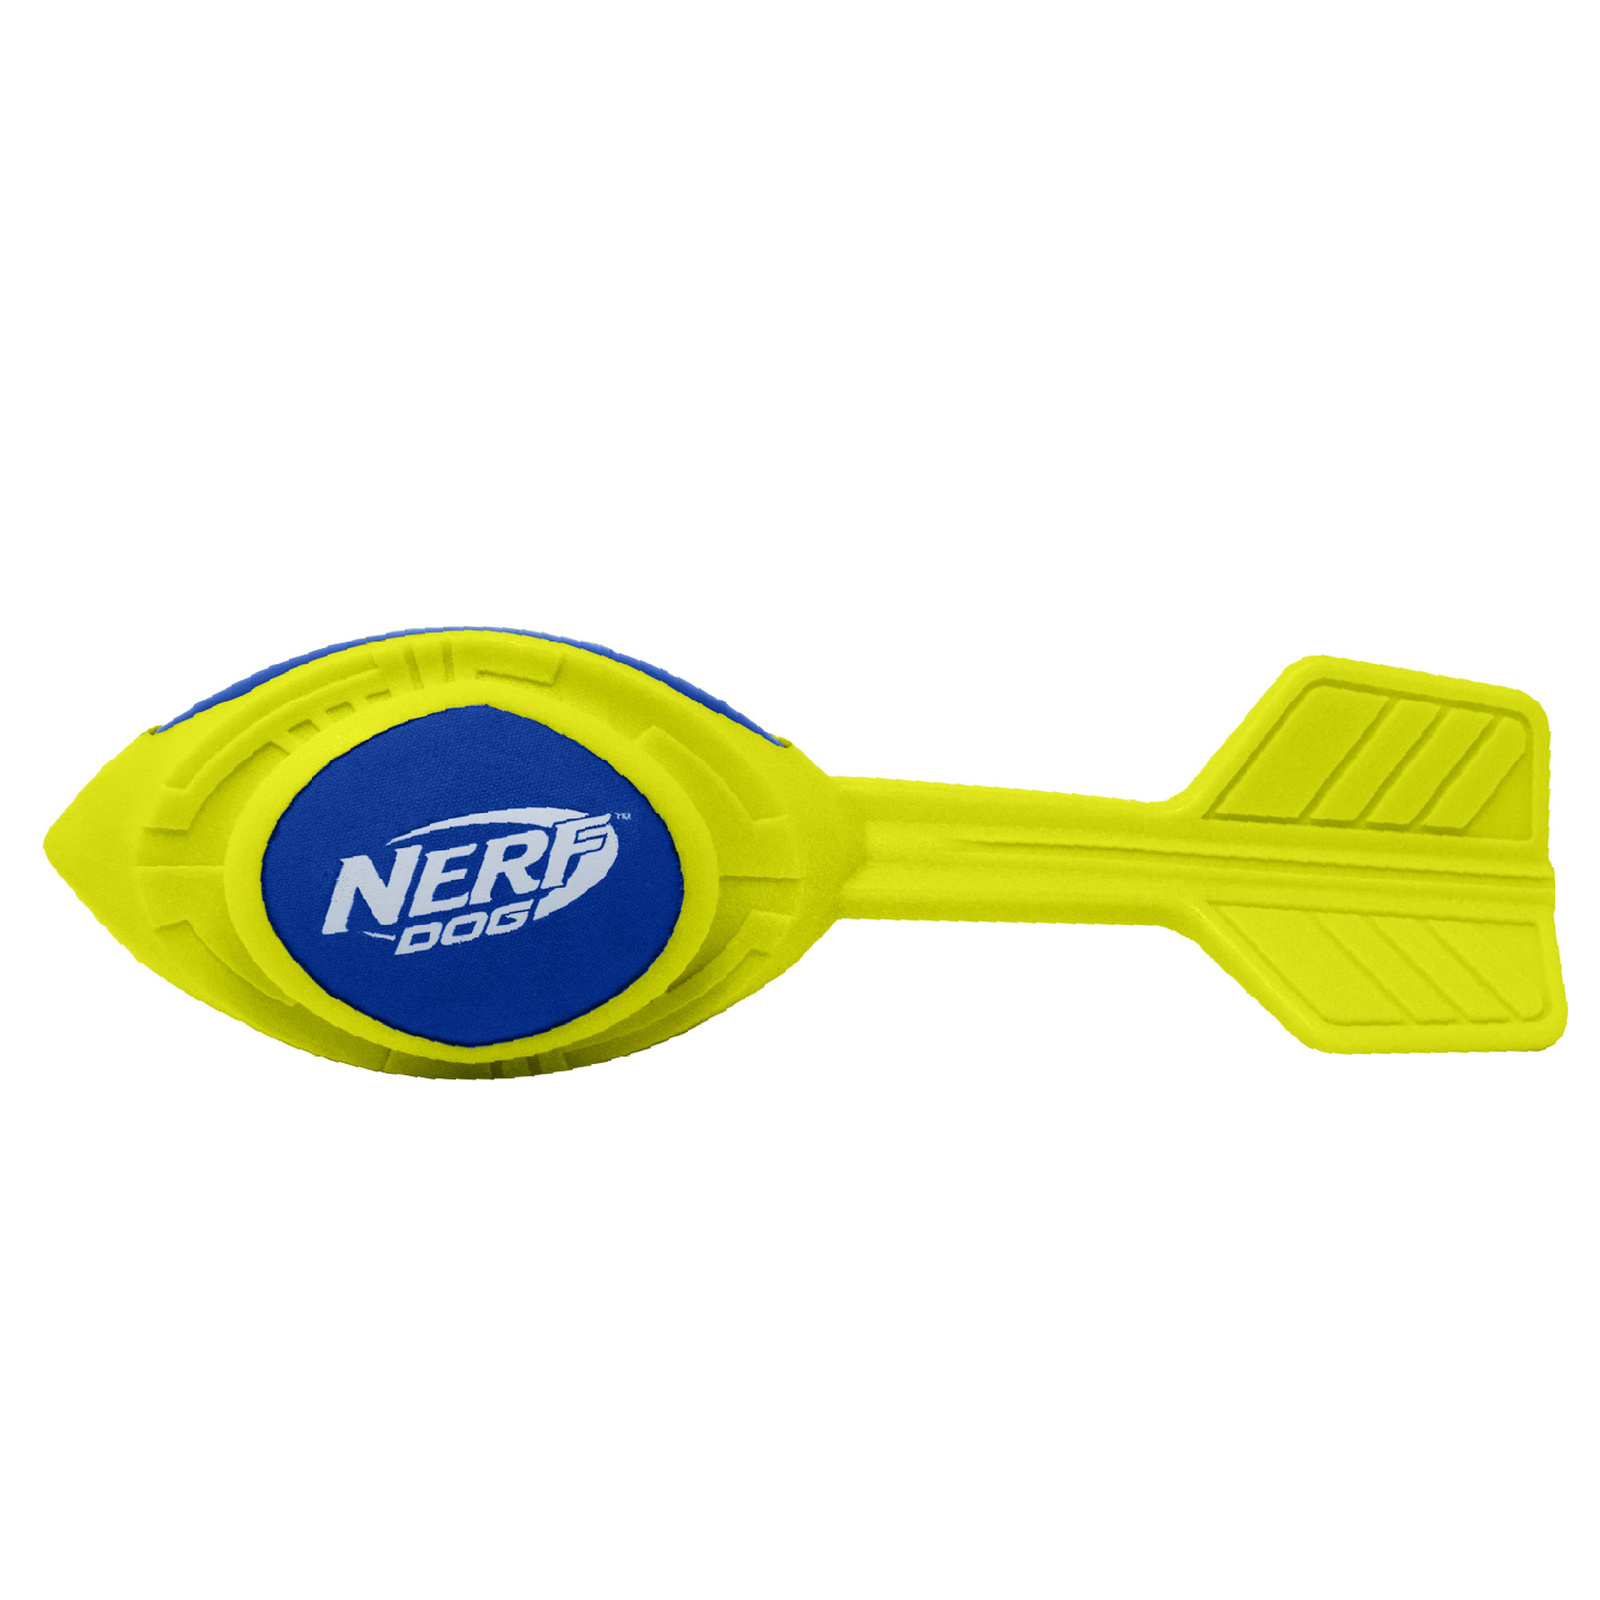 Nerf Nerf игрушка из вспененной резины 30 см (серия Мегатон) (290 г) nerf nerf снаряд из вспененной резины и нейлона 30 см серия мегатон синий зеленый 245 г